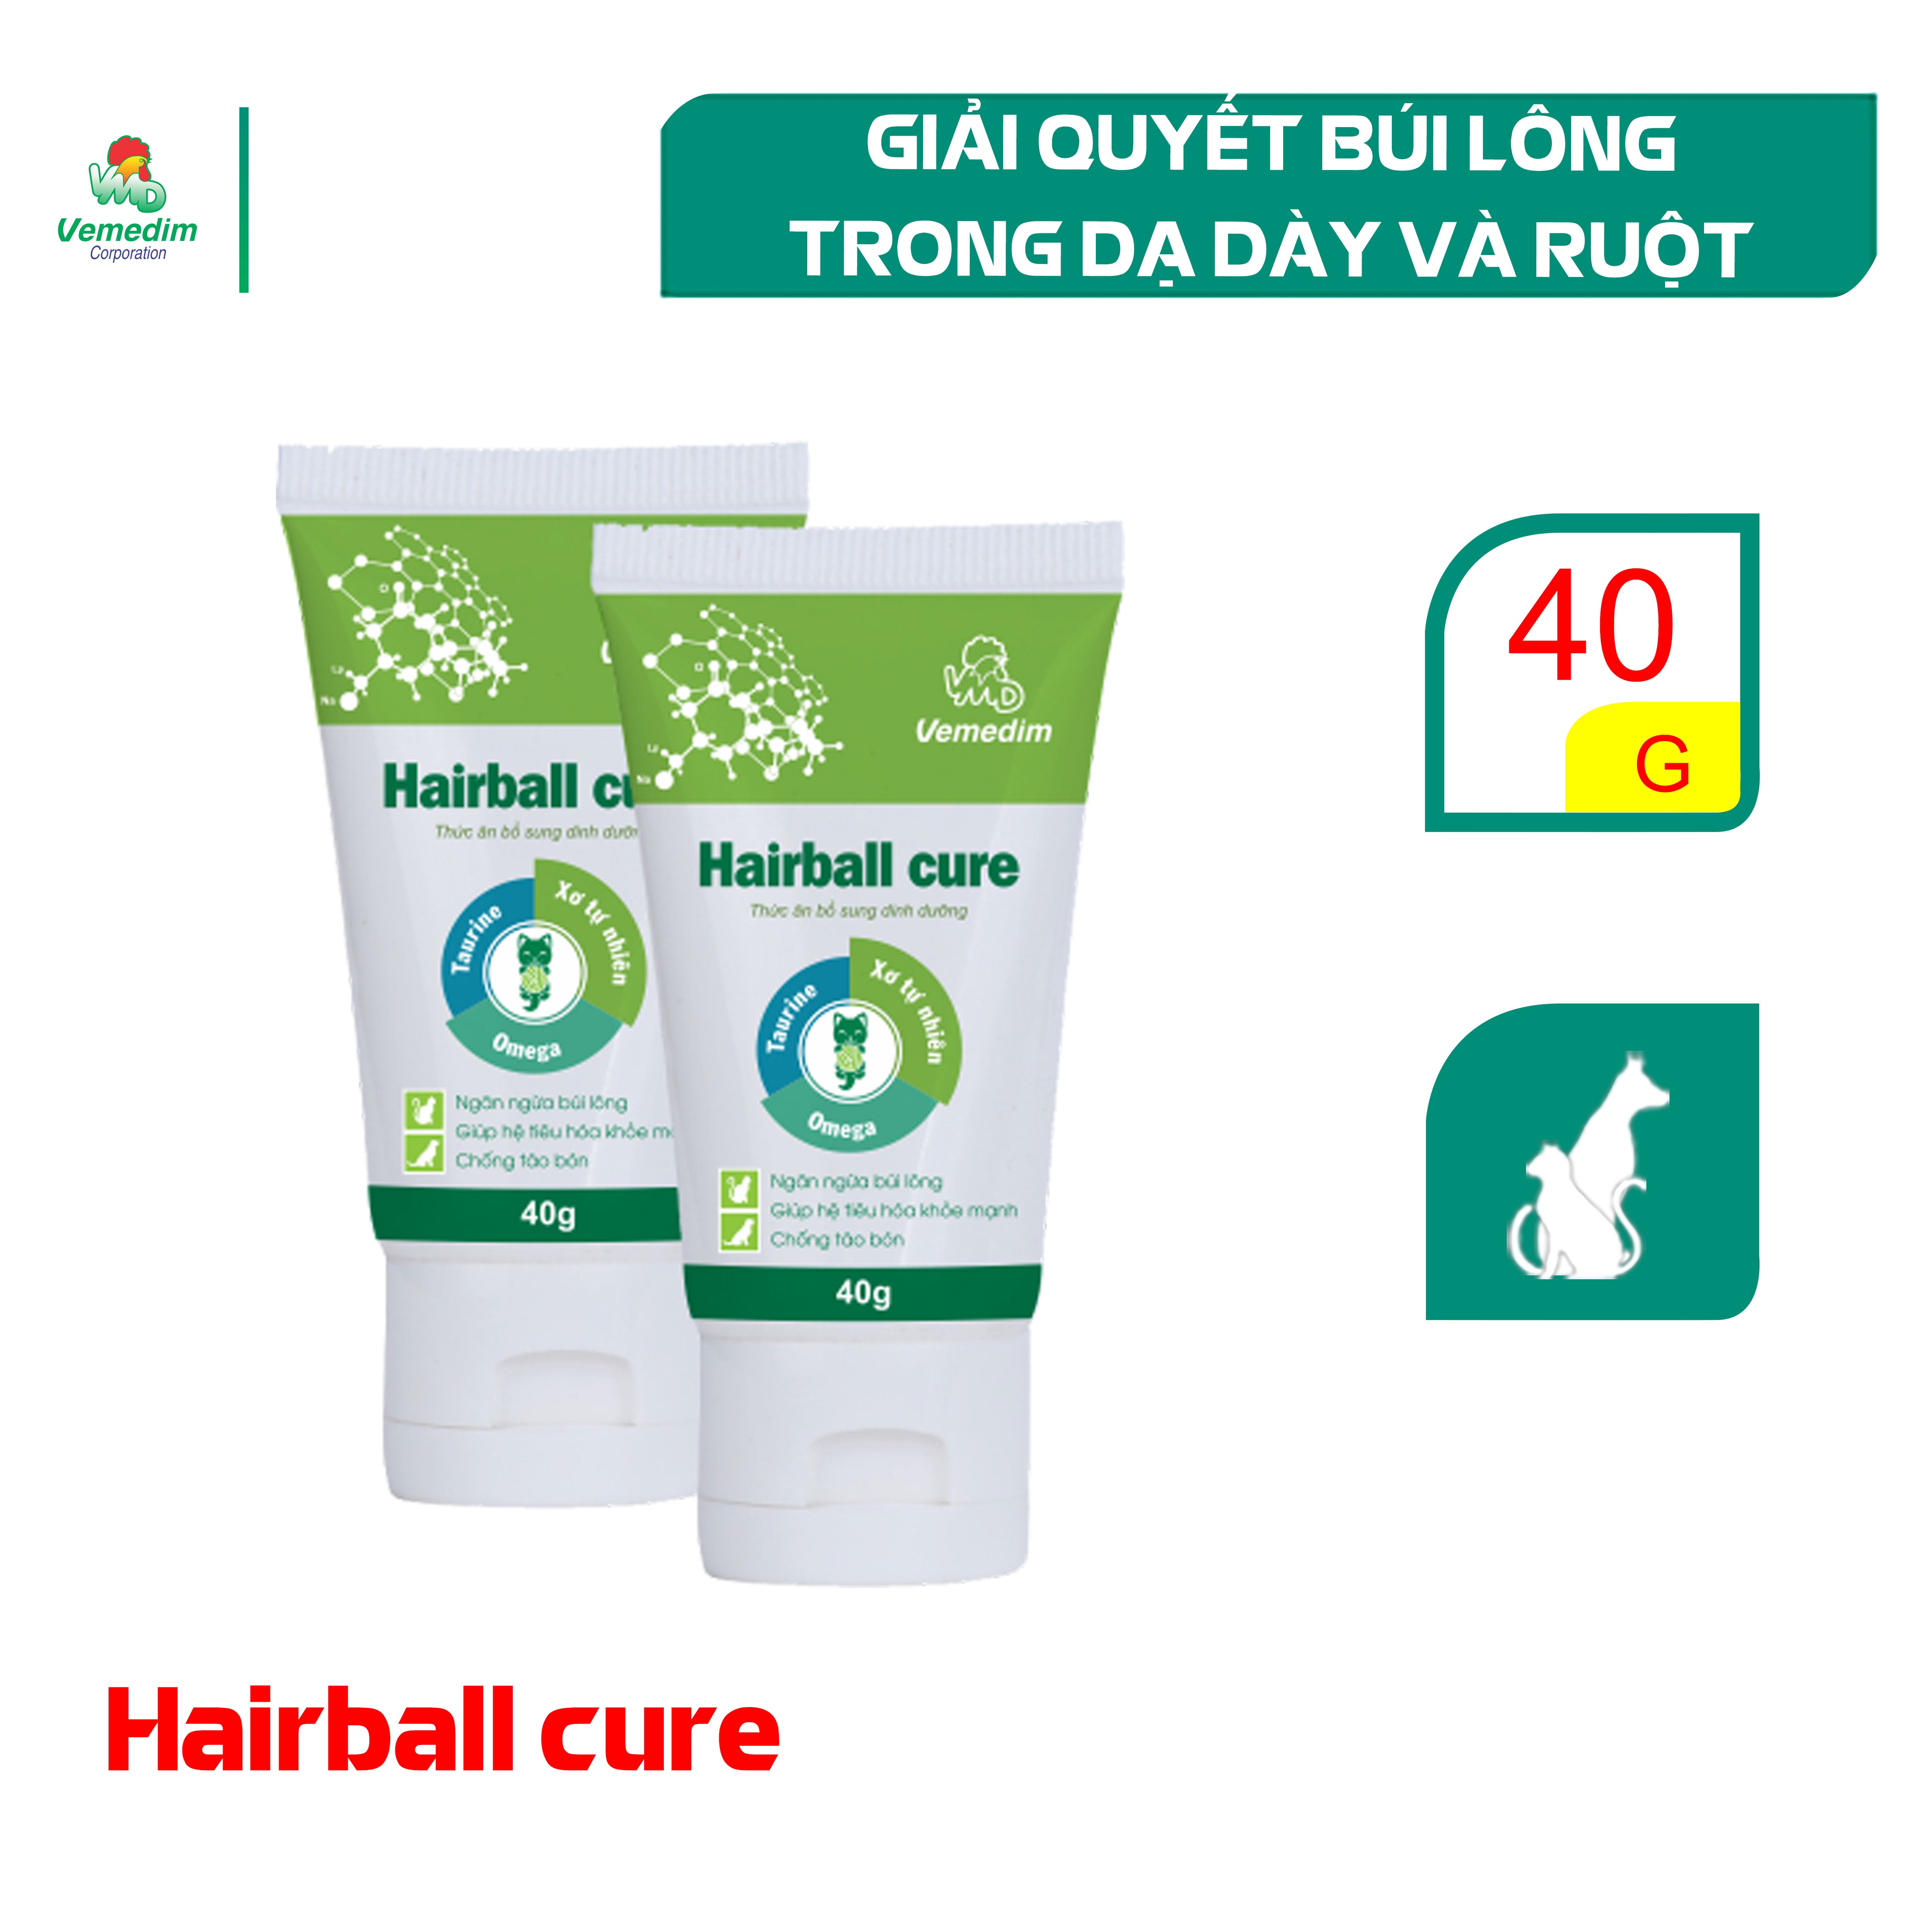 Vemedim Hairball cure cung cấp chất xơ và chất béo tự nhiên ngăn ngừa búi lông trong dạ dày, táo bón, nôn mửa cho chó, mèo tuýp 40g